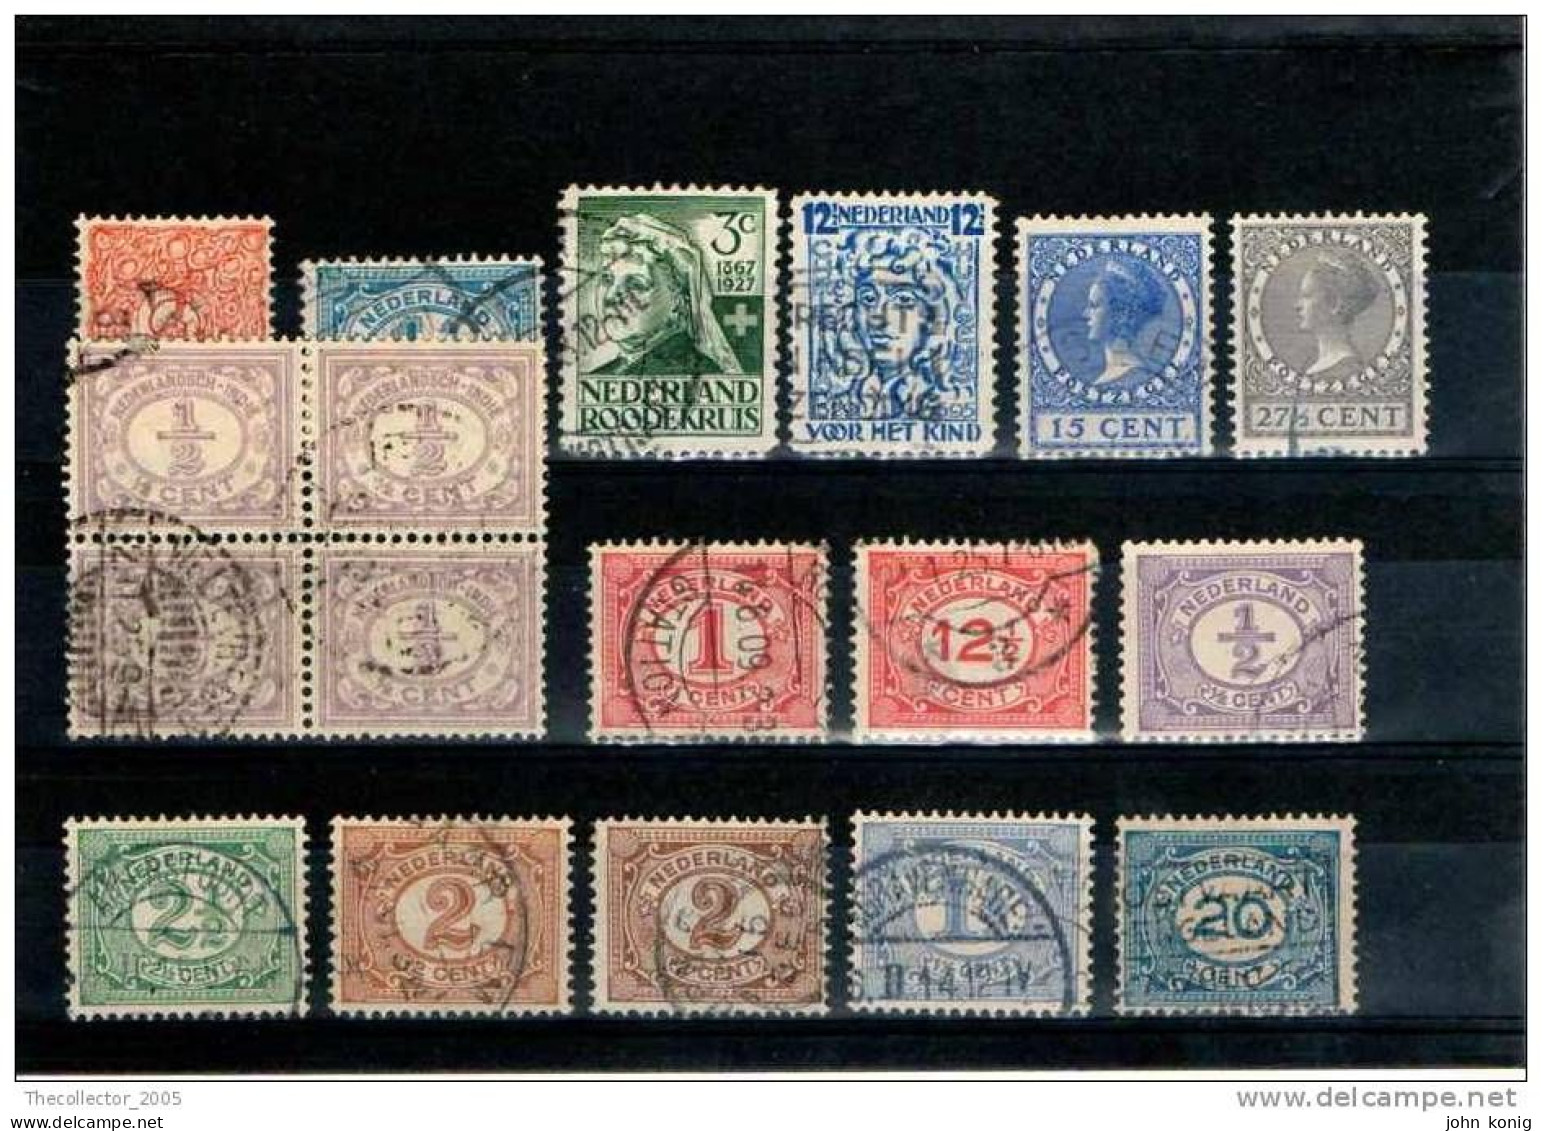 Olanda Holland Nederland - Stamps Lot Used - Gestempelt - Francobolli Lotto Usati - Verzamelingen